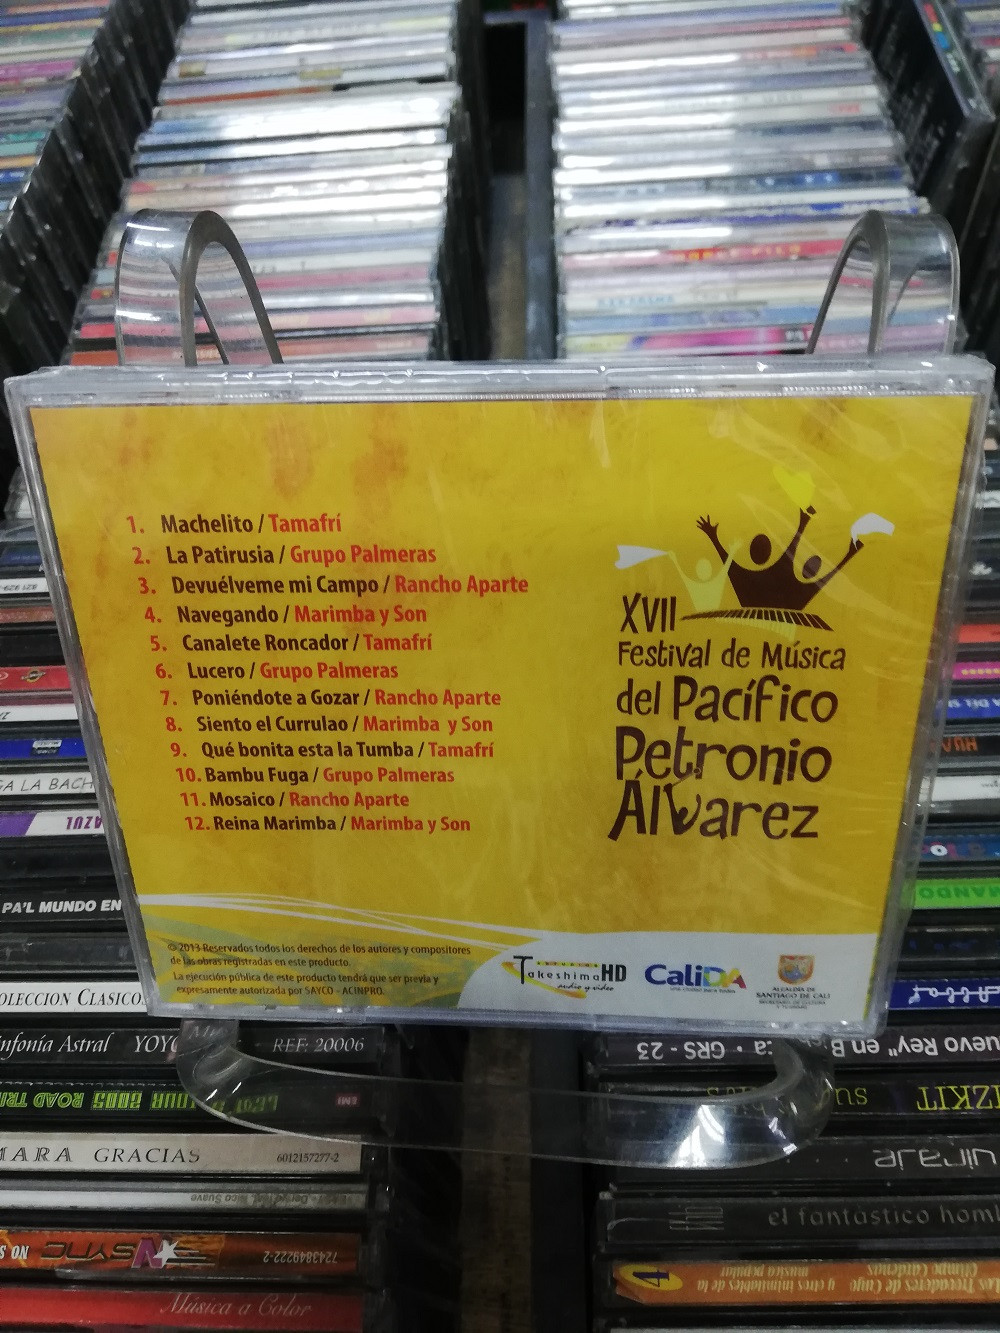 Imagen CD FESTIVAL DE MÚSICA DEL PACÍFICO PETRONIO ALVAREZ # 17 2